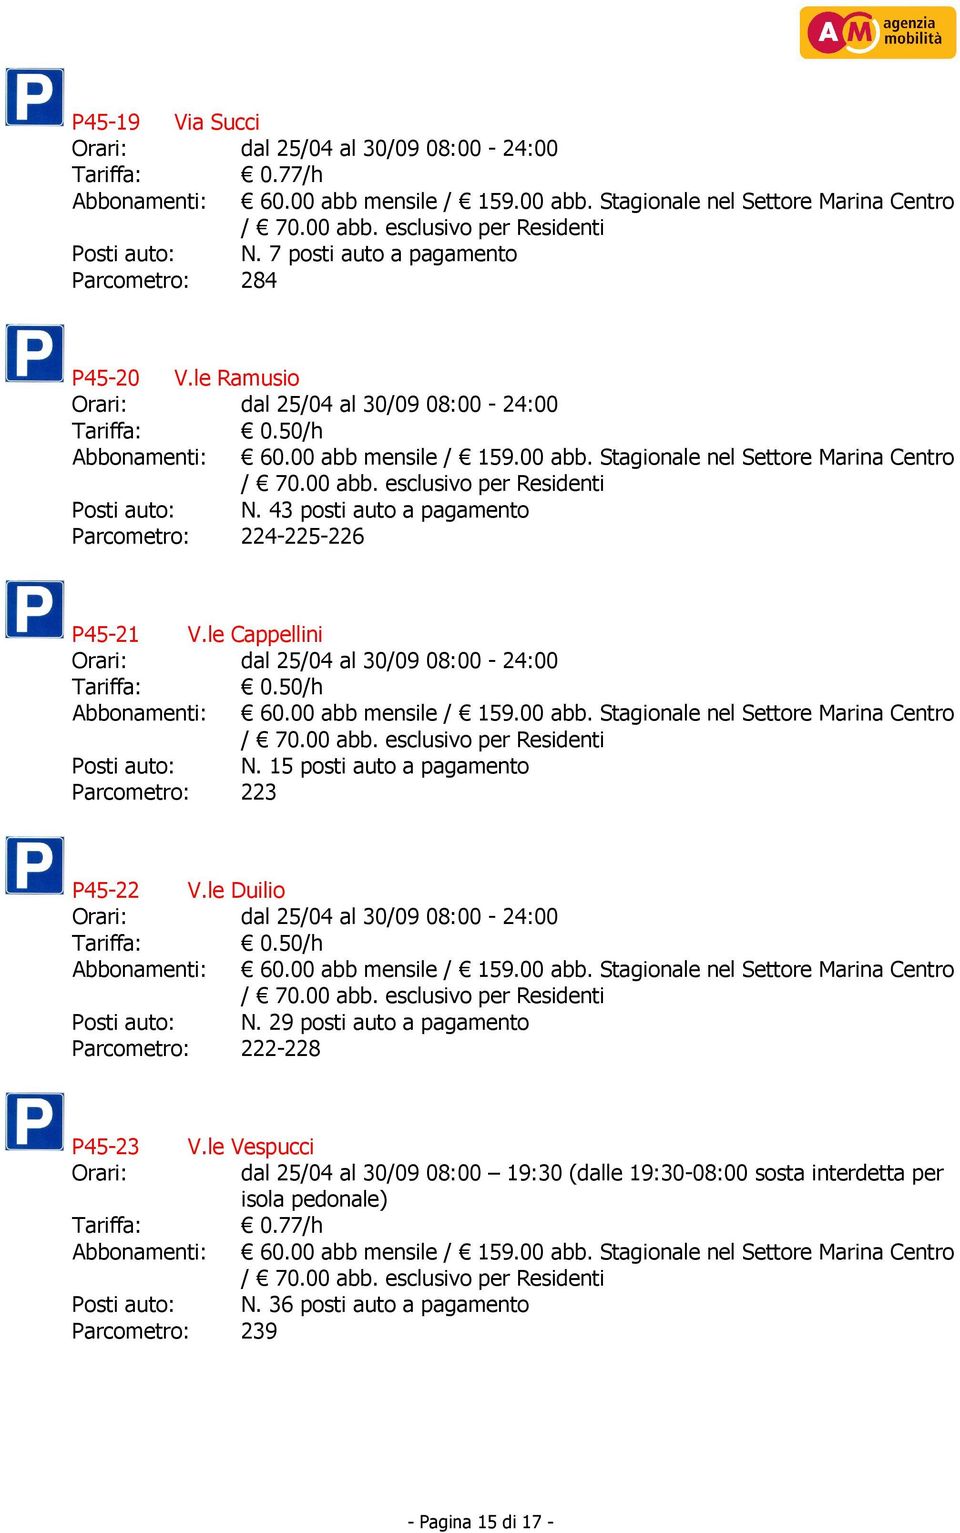 15 posti auto a pagamento Parcometro: 223 P45-22 V.le Duilio Tariffa: 0.50/h Posti auto: N.